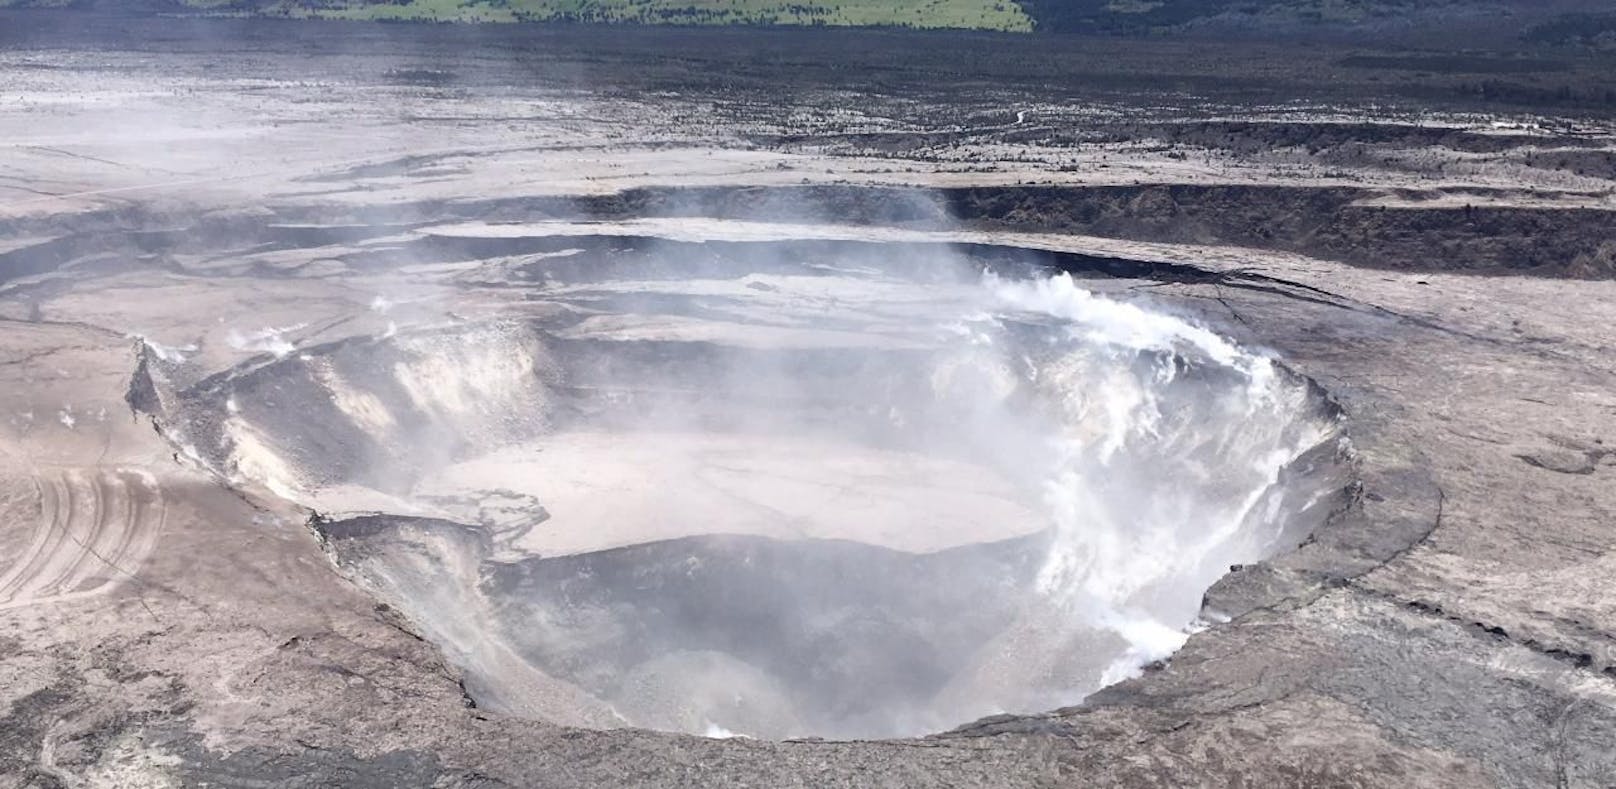 Ein Tourist wollte einen besseren Blick auf den hawaiianischen Vulkan Kilauea werfen. Er kletterte auf ein Gelände und stürzte in die Tiefe.